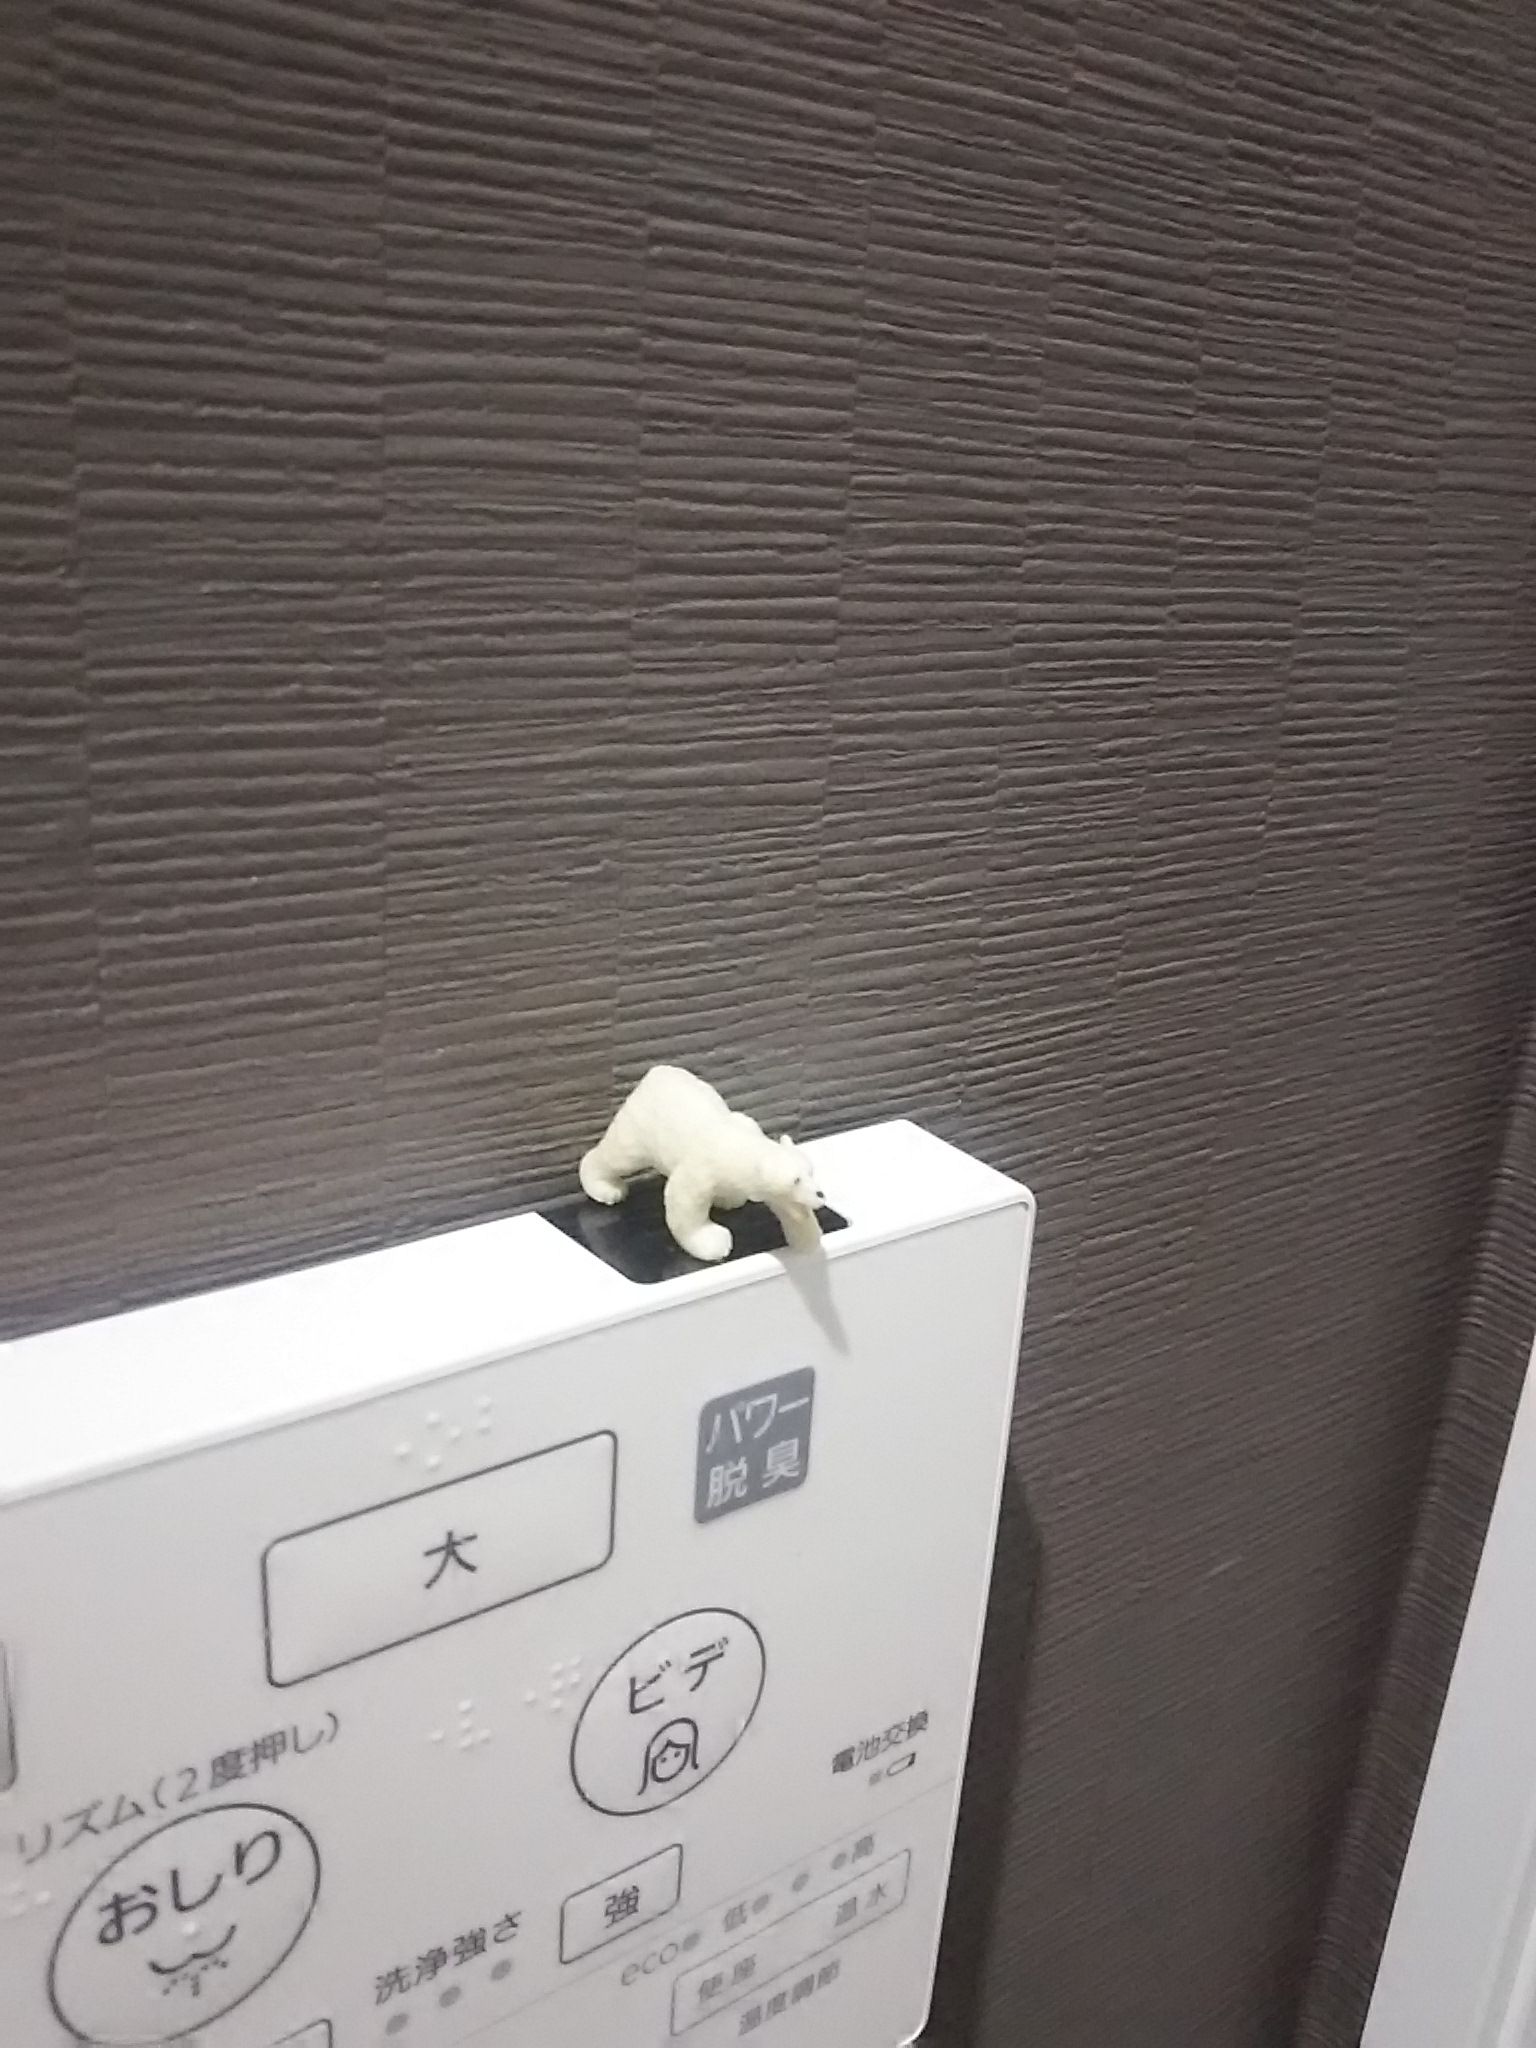 トイレの紹介 １階トイレ 猫と１マス吹き抜けのi Smartブログ 楽天ブログ